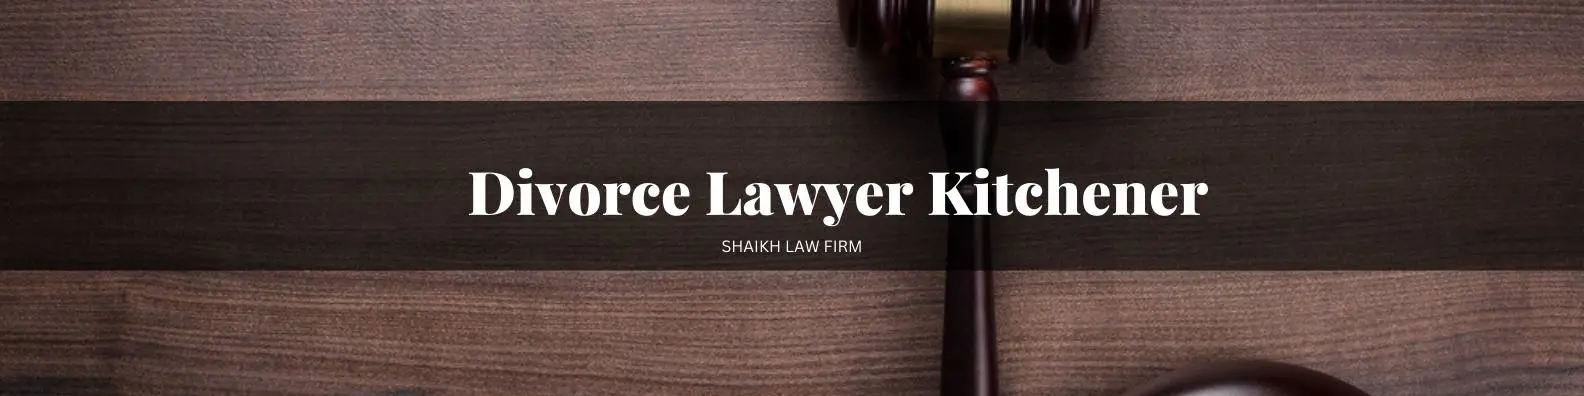 Divorce-Lawyer-Kitchener